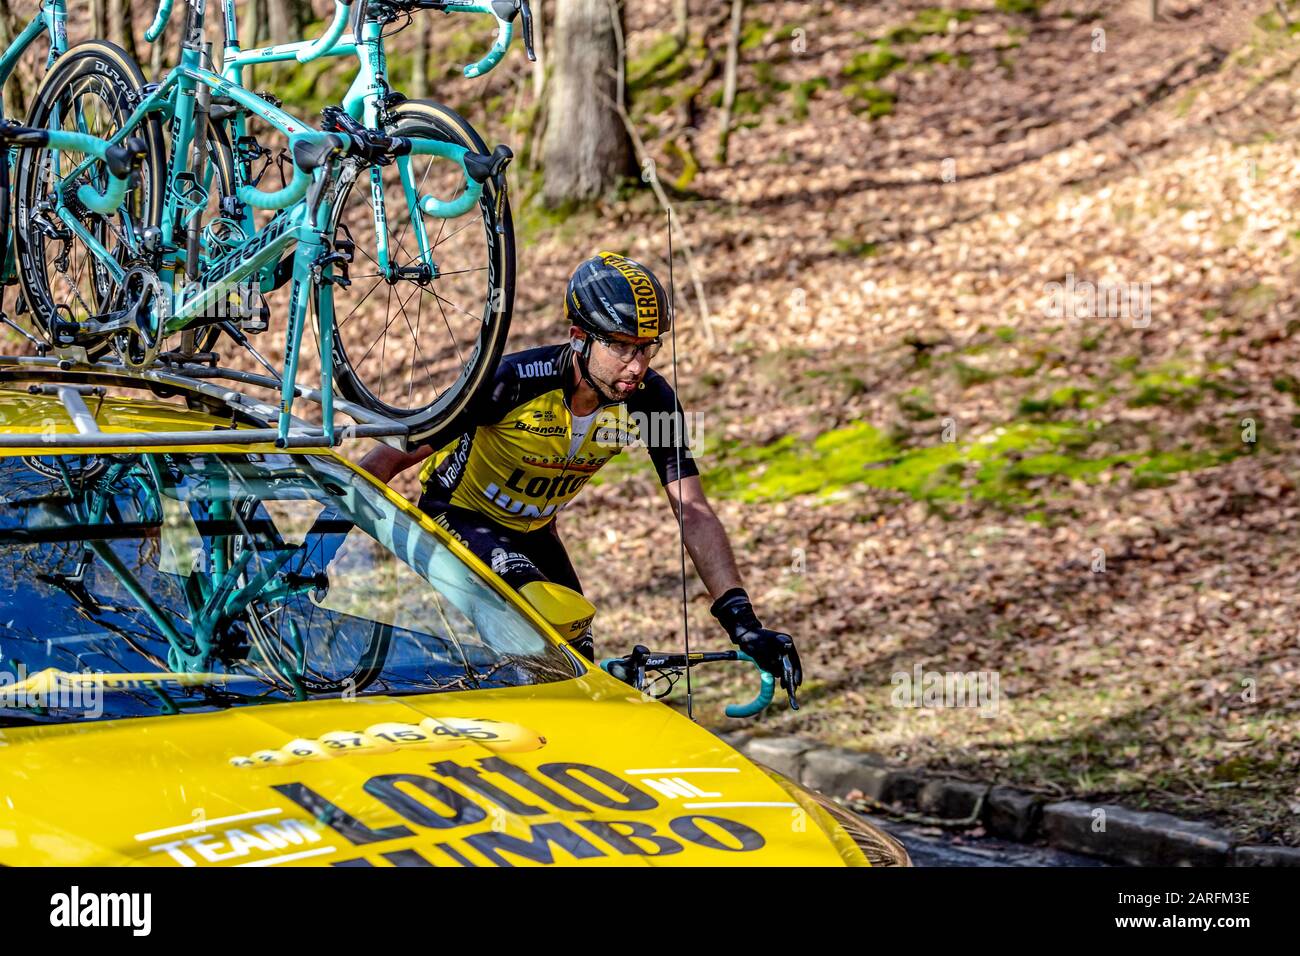 Cote de Senlisse, Francia - 5 marzo 2017: Il ciclista olandese Tom Leezer del Team Lotto NL-Jumbo in sella alla sua vettura di squadra sulla Cote de Senlisse durante il Foto Stock